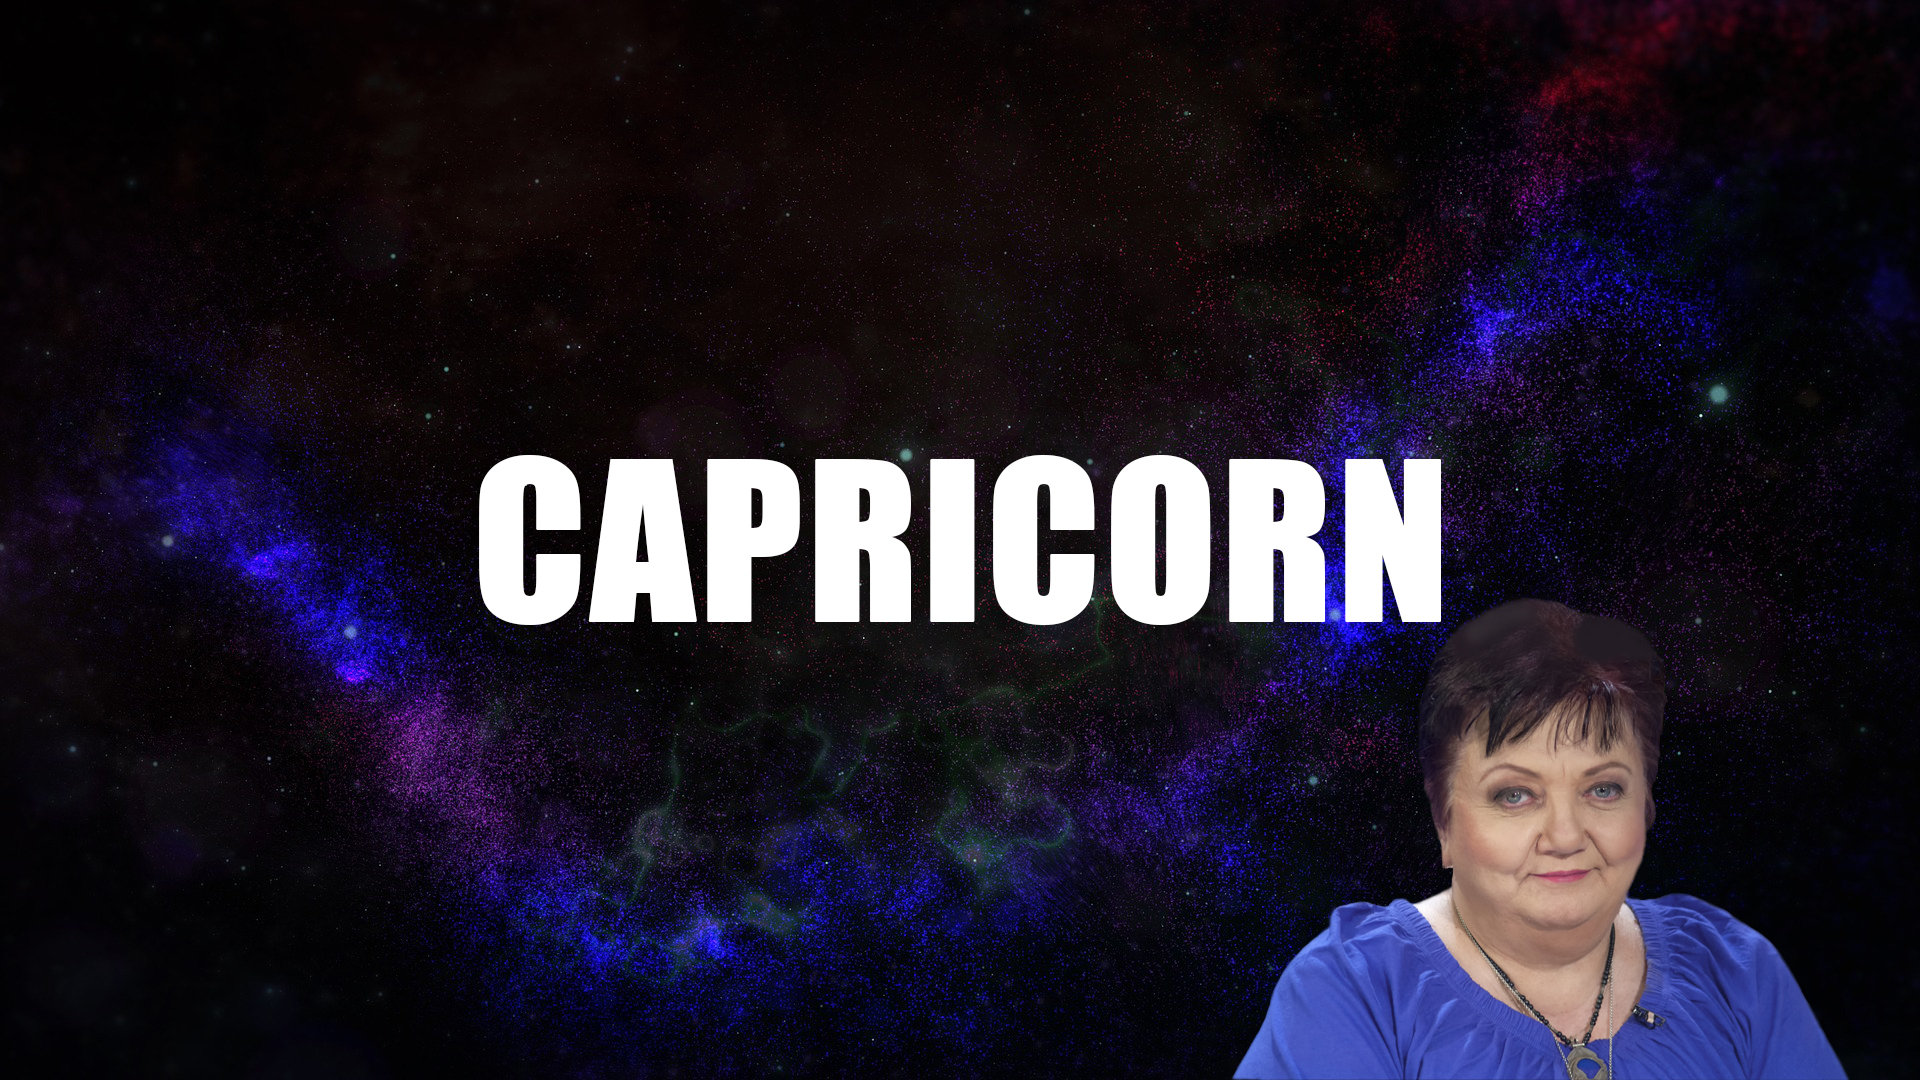 Horoscop iunie 2019 Minerva - CAPRICORN. Ai tedința să te afunzi în probleme